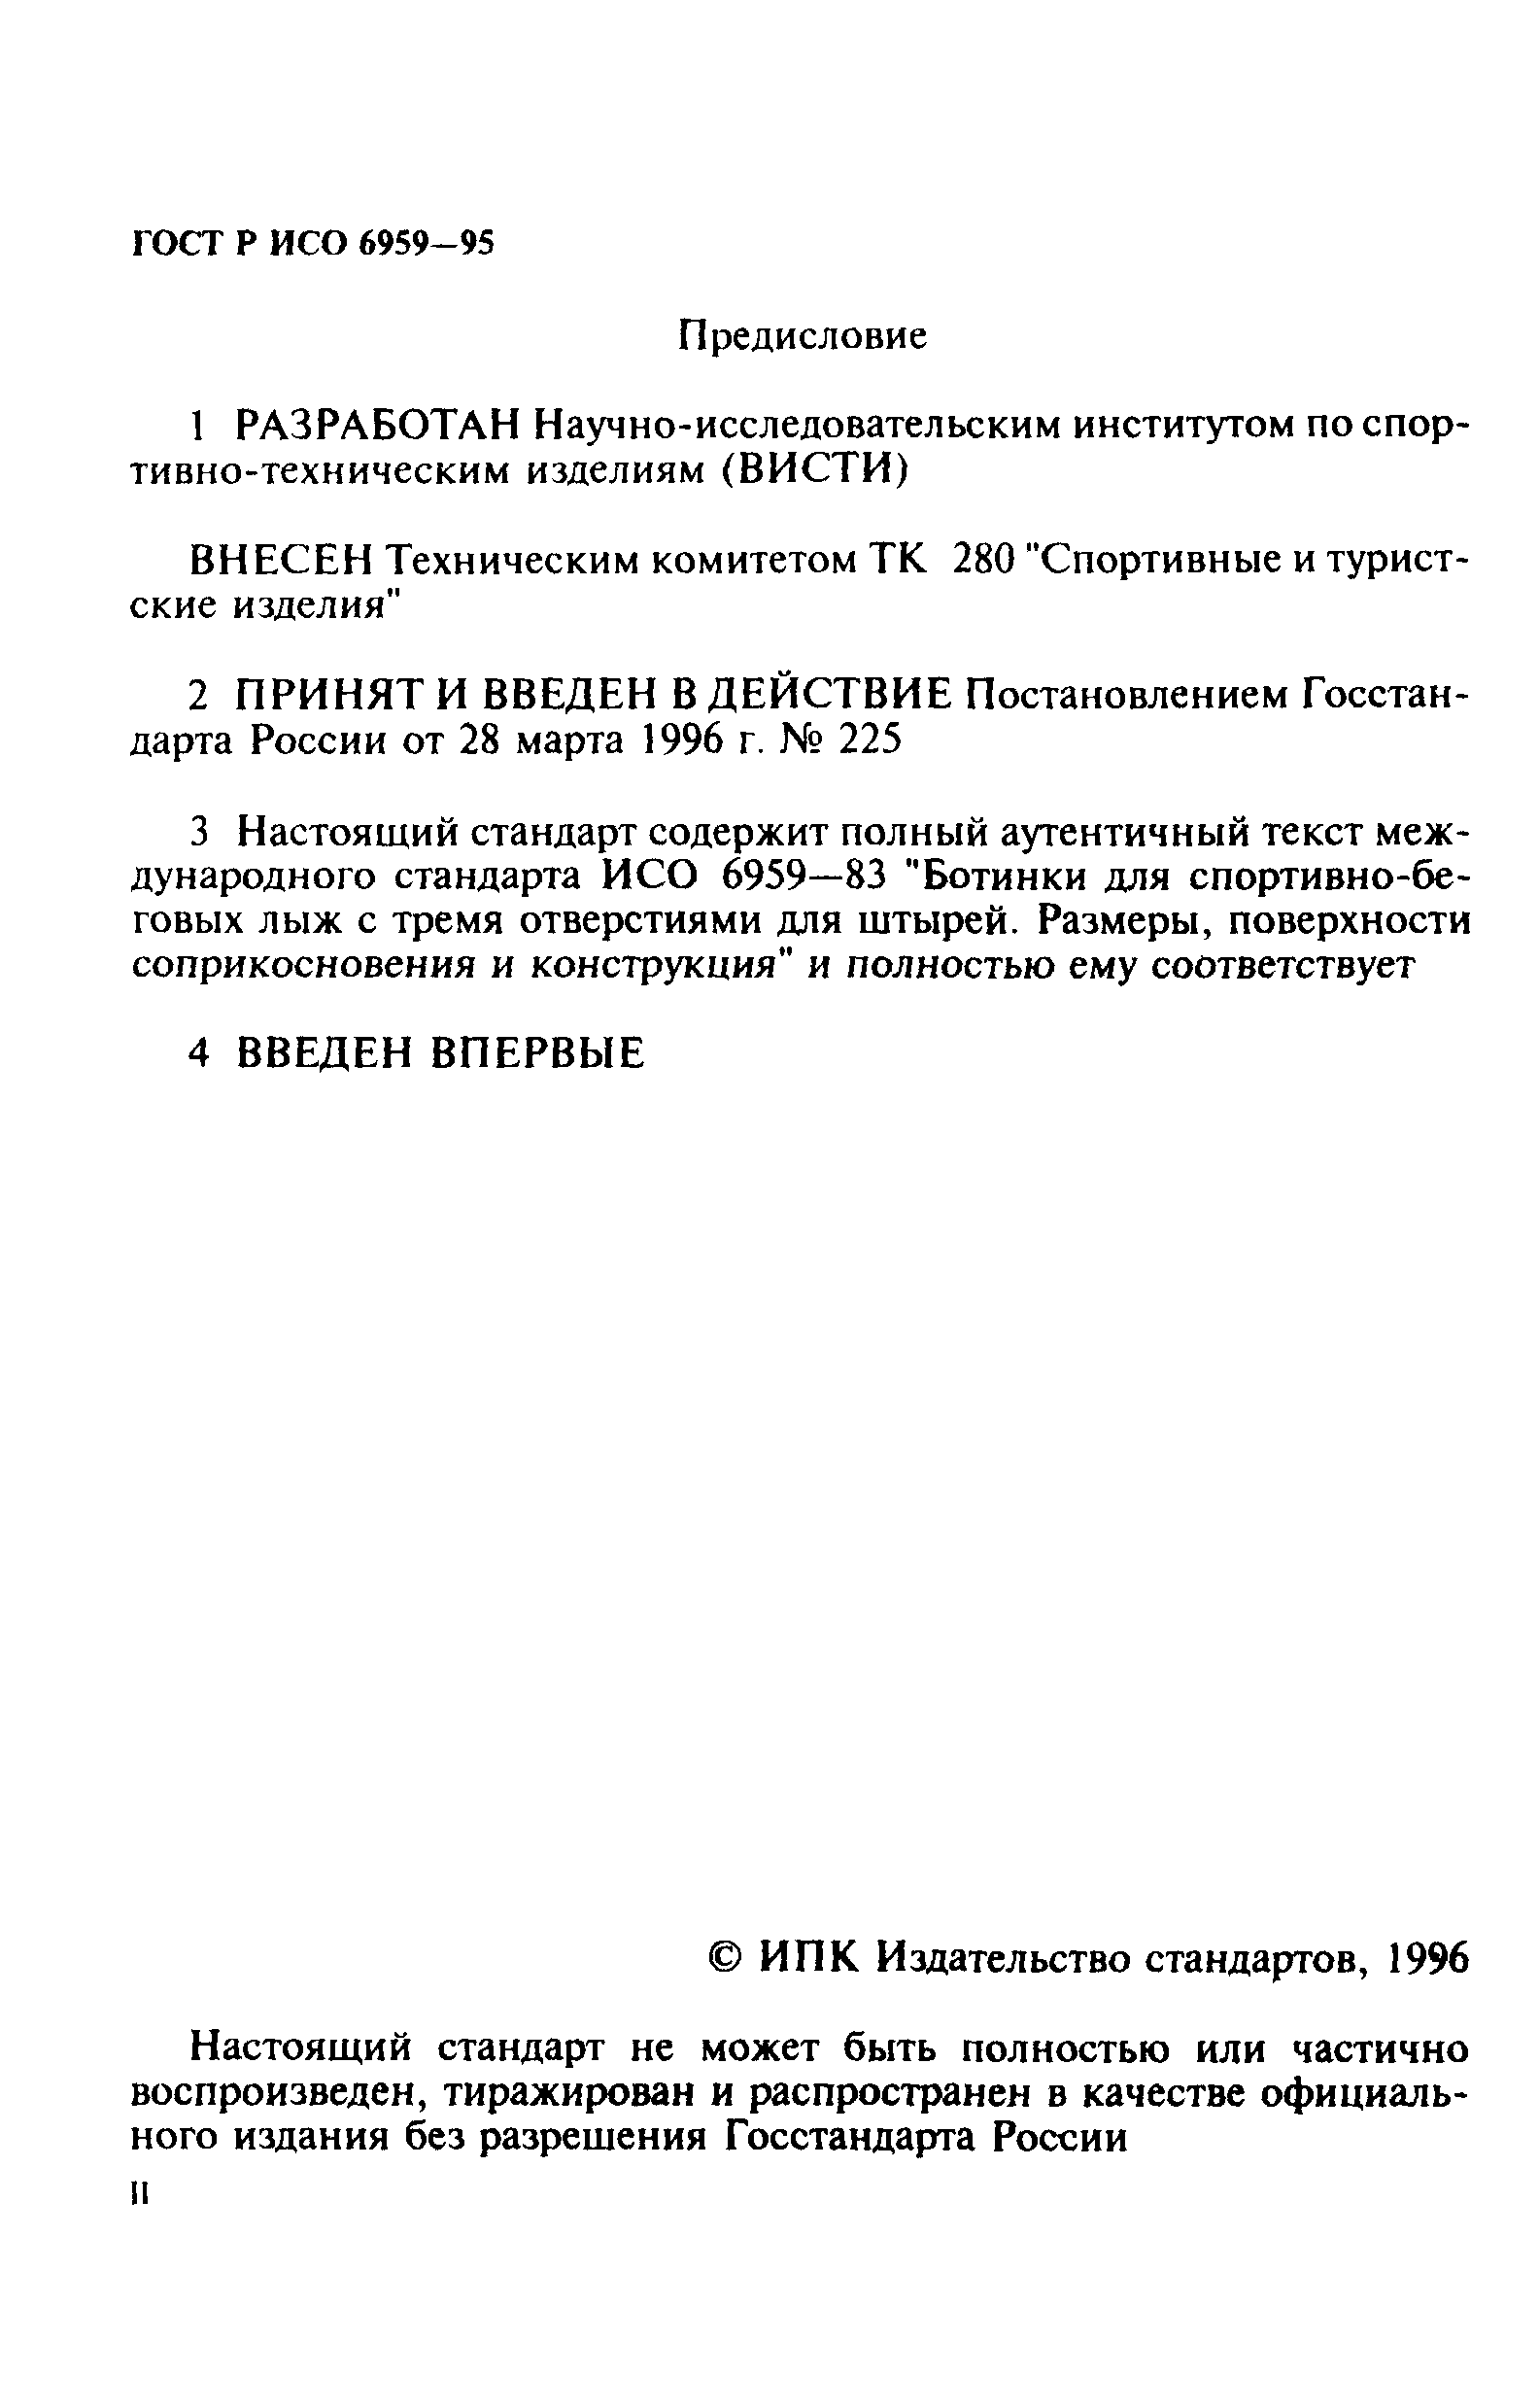 ГОСТ Р ИСО 6959-96